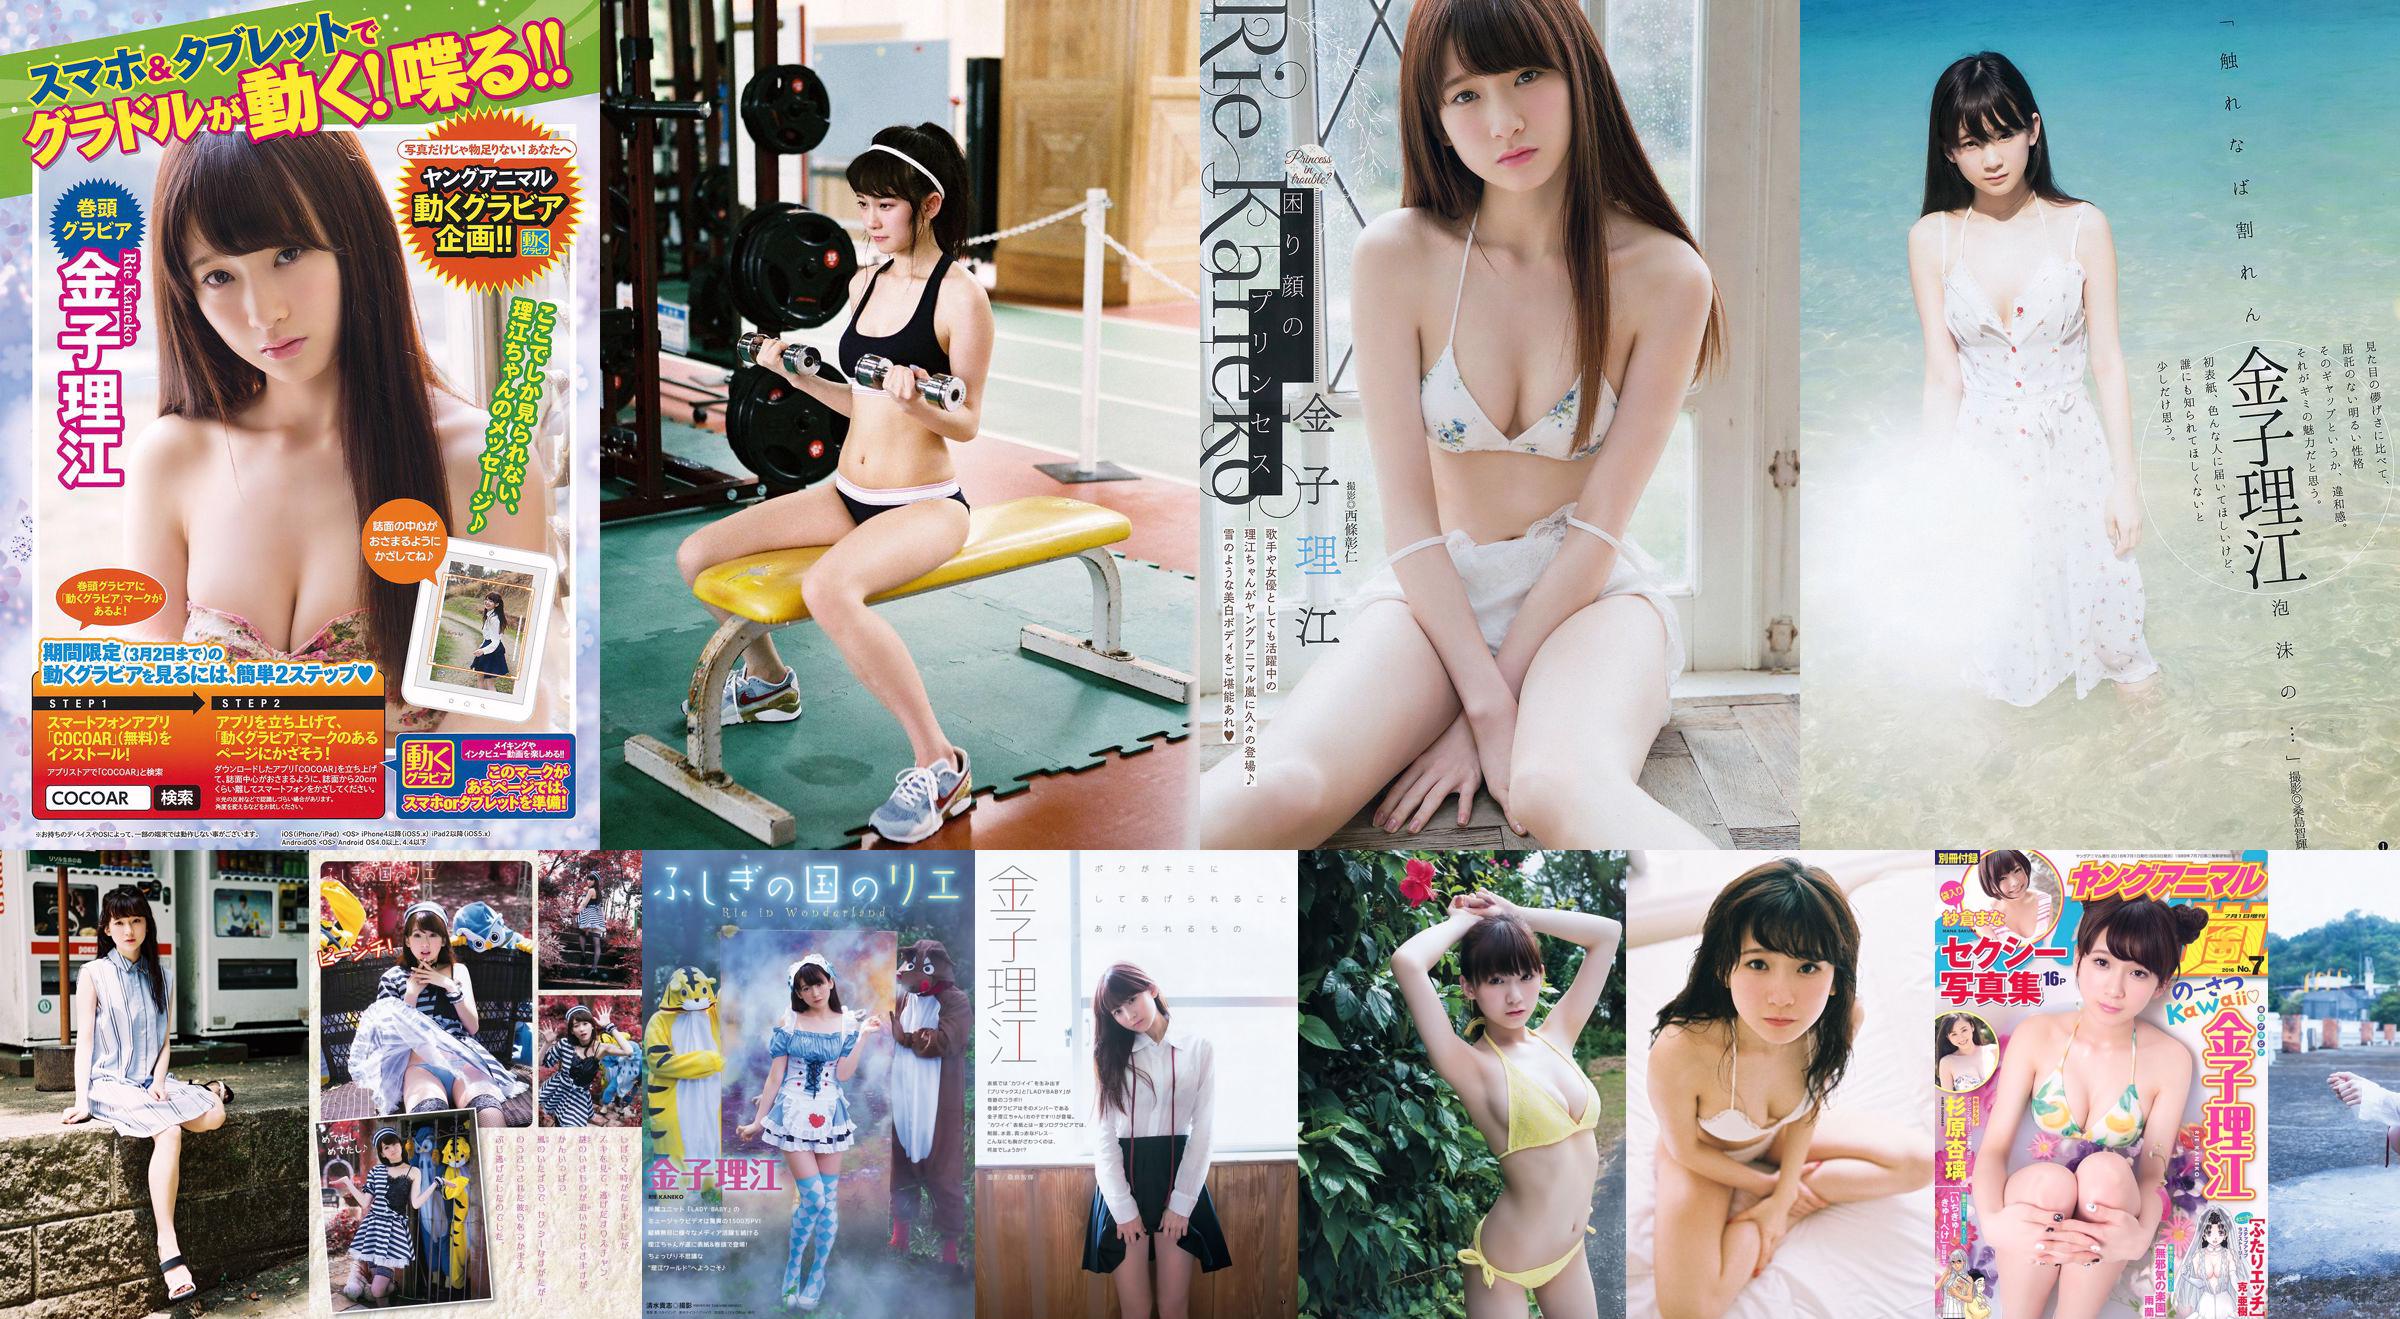 Rie Kaneko, Anri Sugihara, Sakura ま な [Young Animal Arashi Special Issue] No.07 2016 Photo Magazine No.657093 Página 4